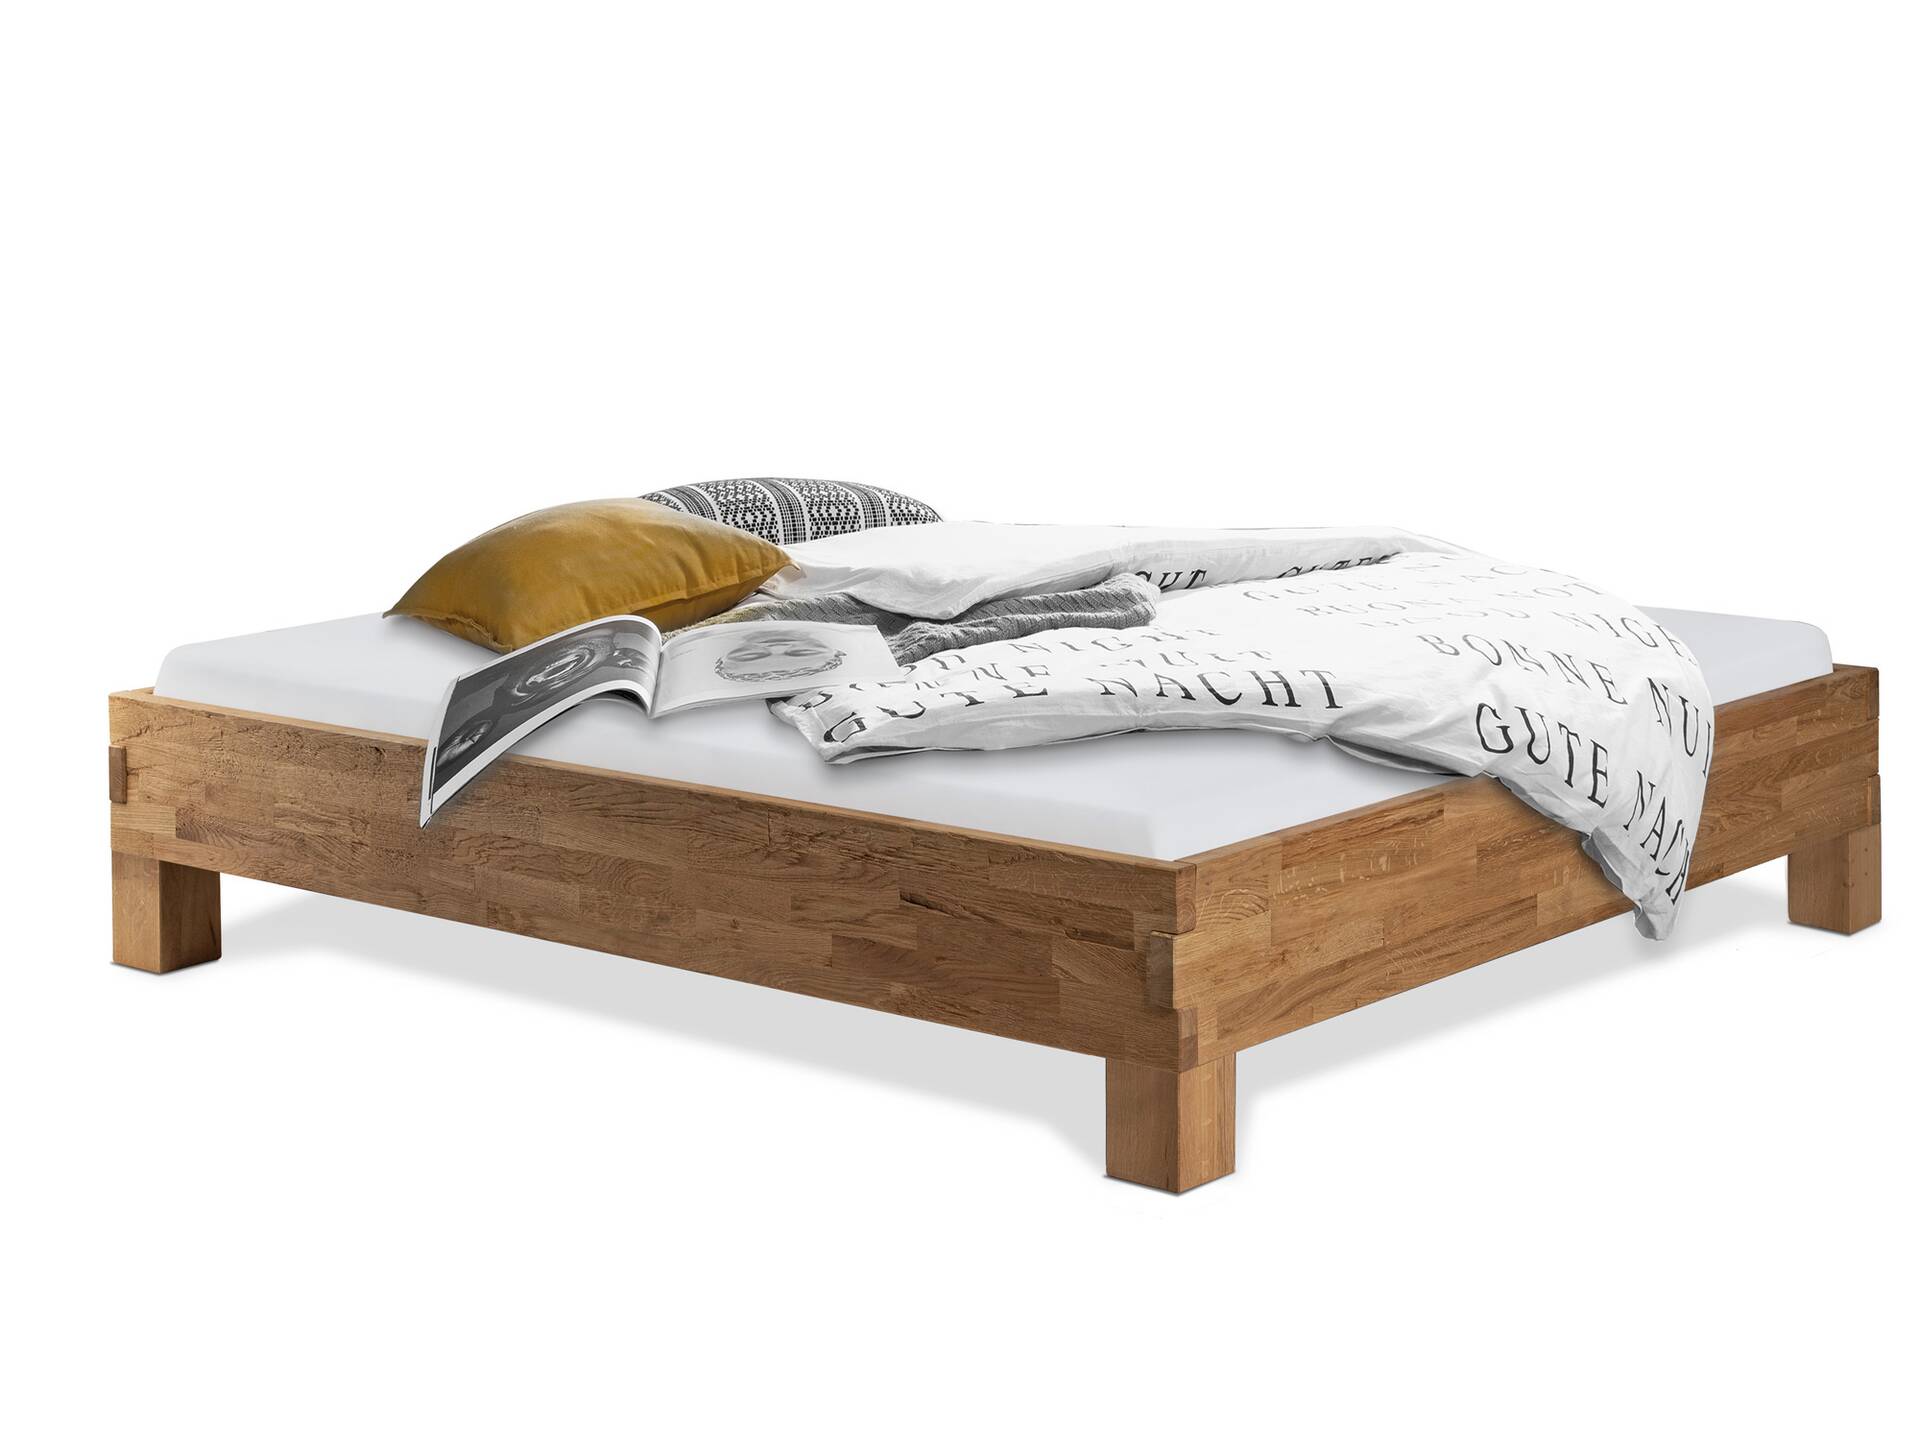 CORDINO 4-Fuß-Bett aus Eiche ohne Kopfteil, Material Massivholz 200 x 220 cm | Eiche lackiert | gehackt